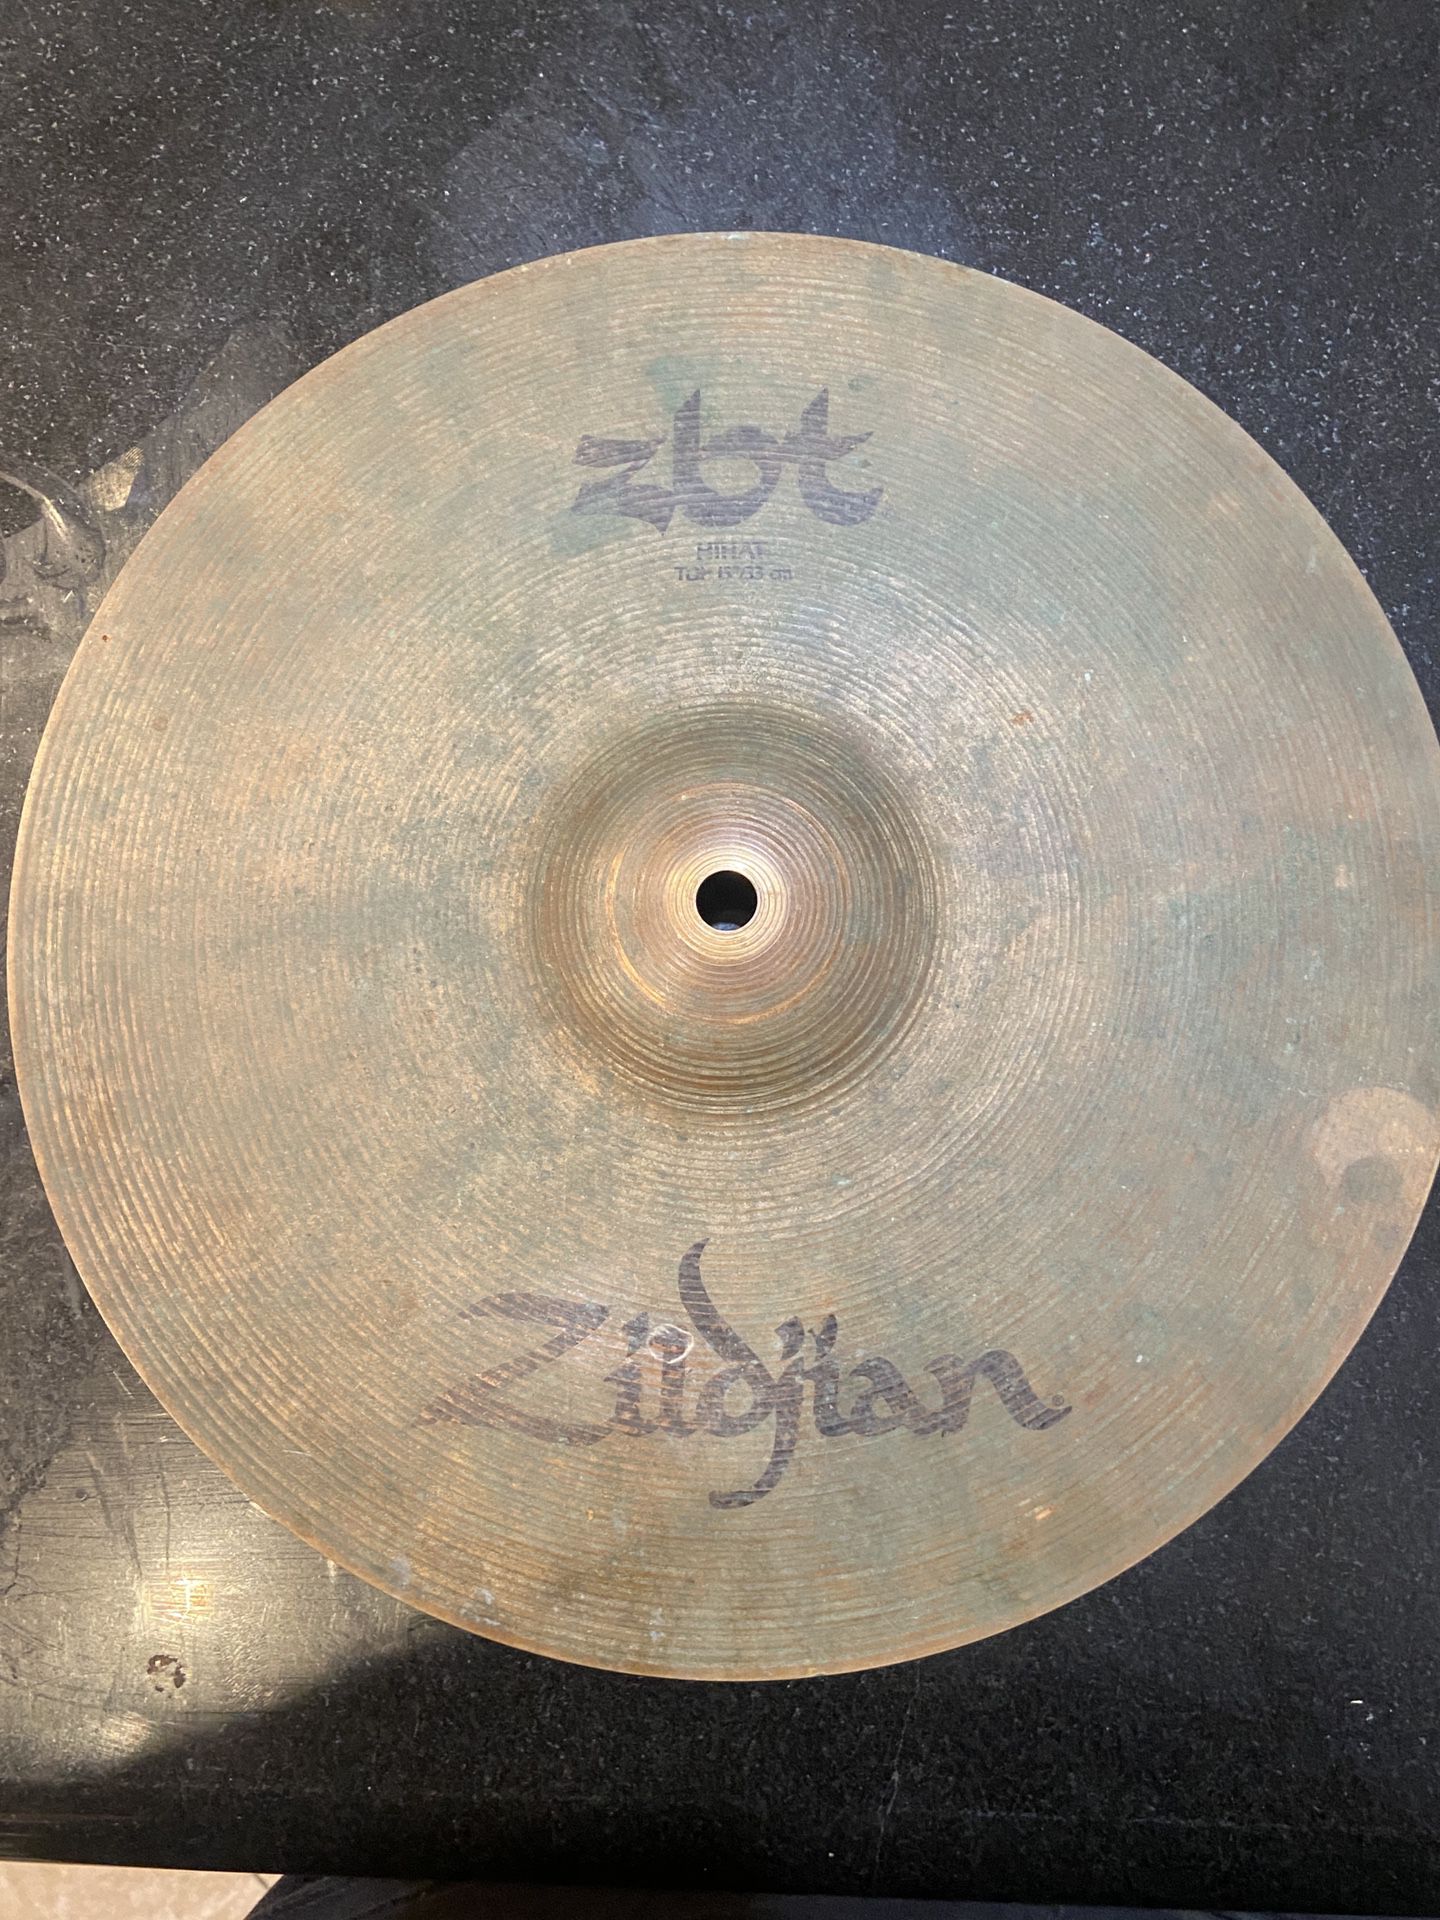 Zildjian High Hat 13/33cm Top And Bottom